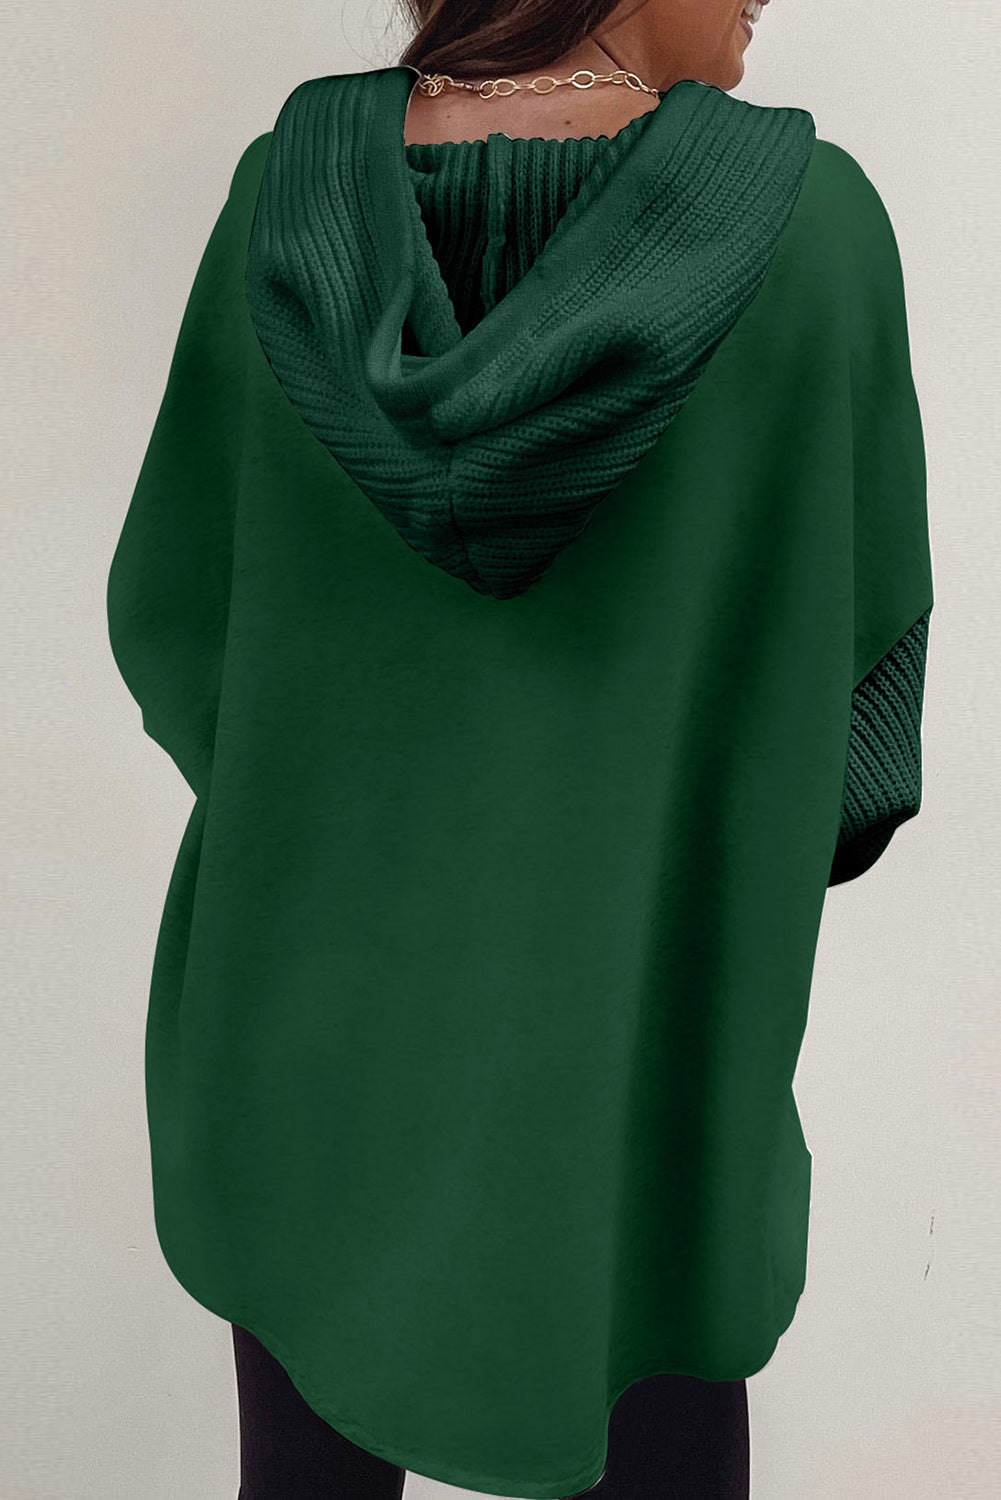 Veste à capuche boutonnée vert noirâtre à manches tricotées contrastées